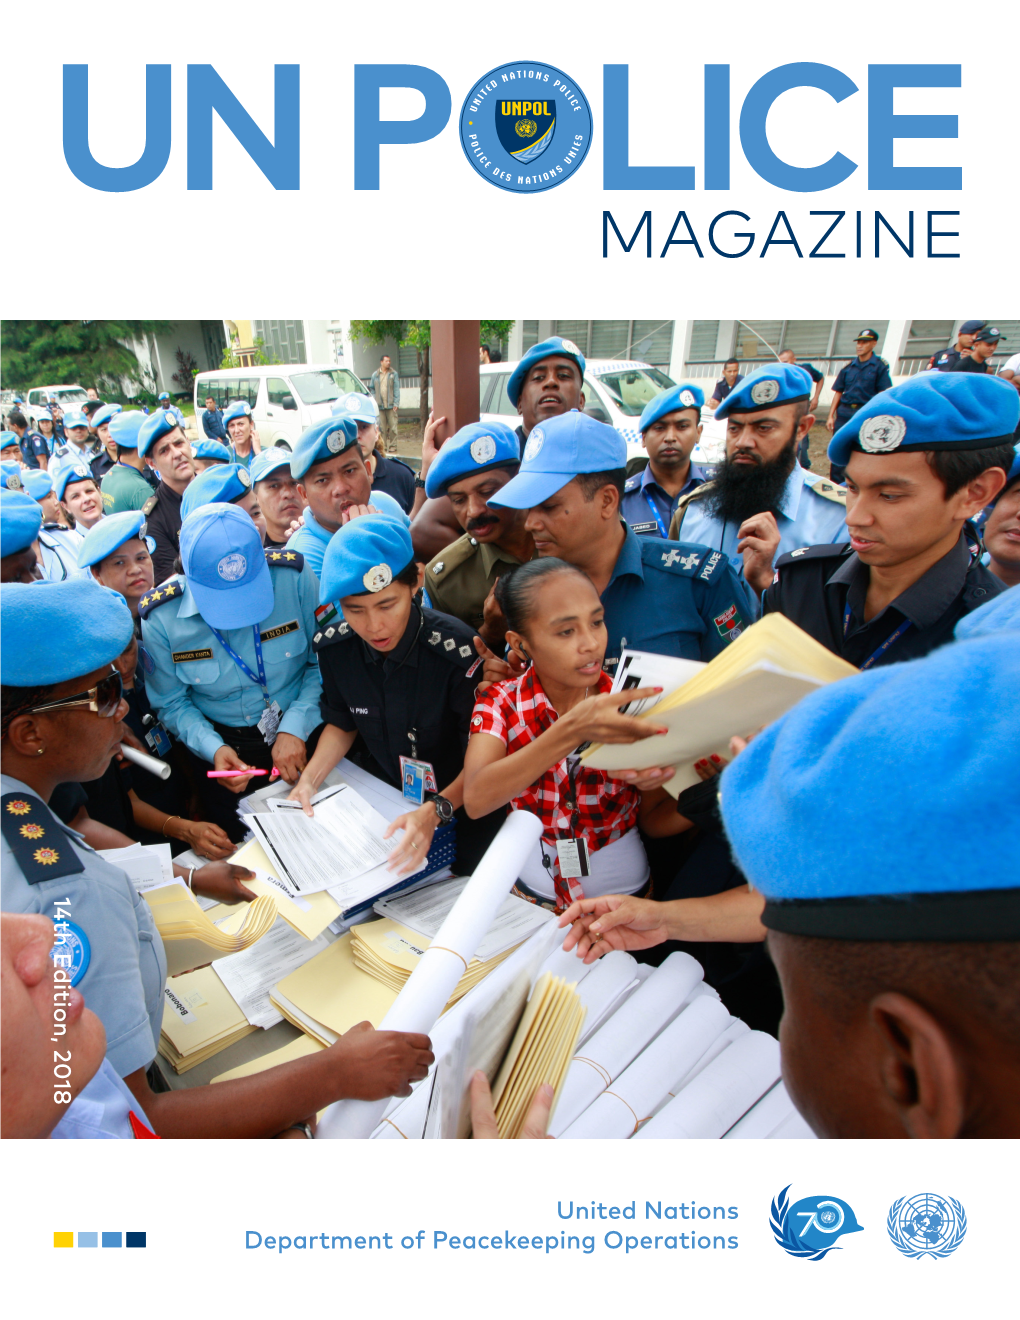 UN Police Magazine 14Th Edition, 2018